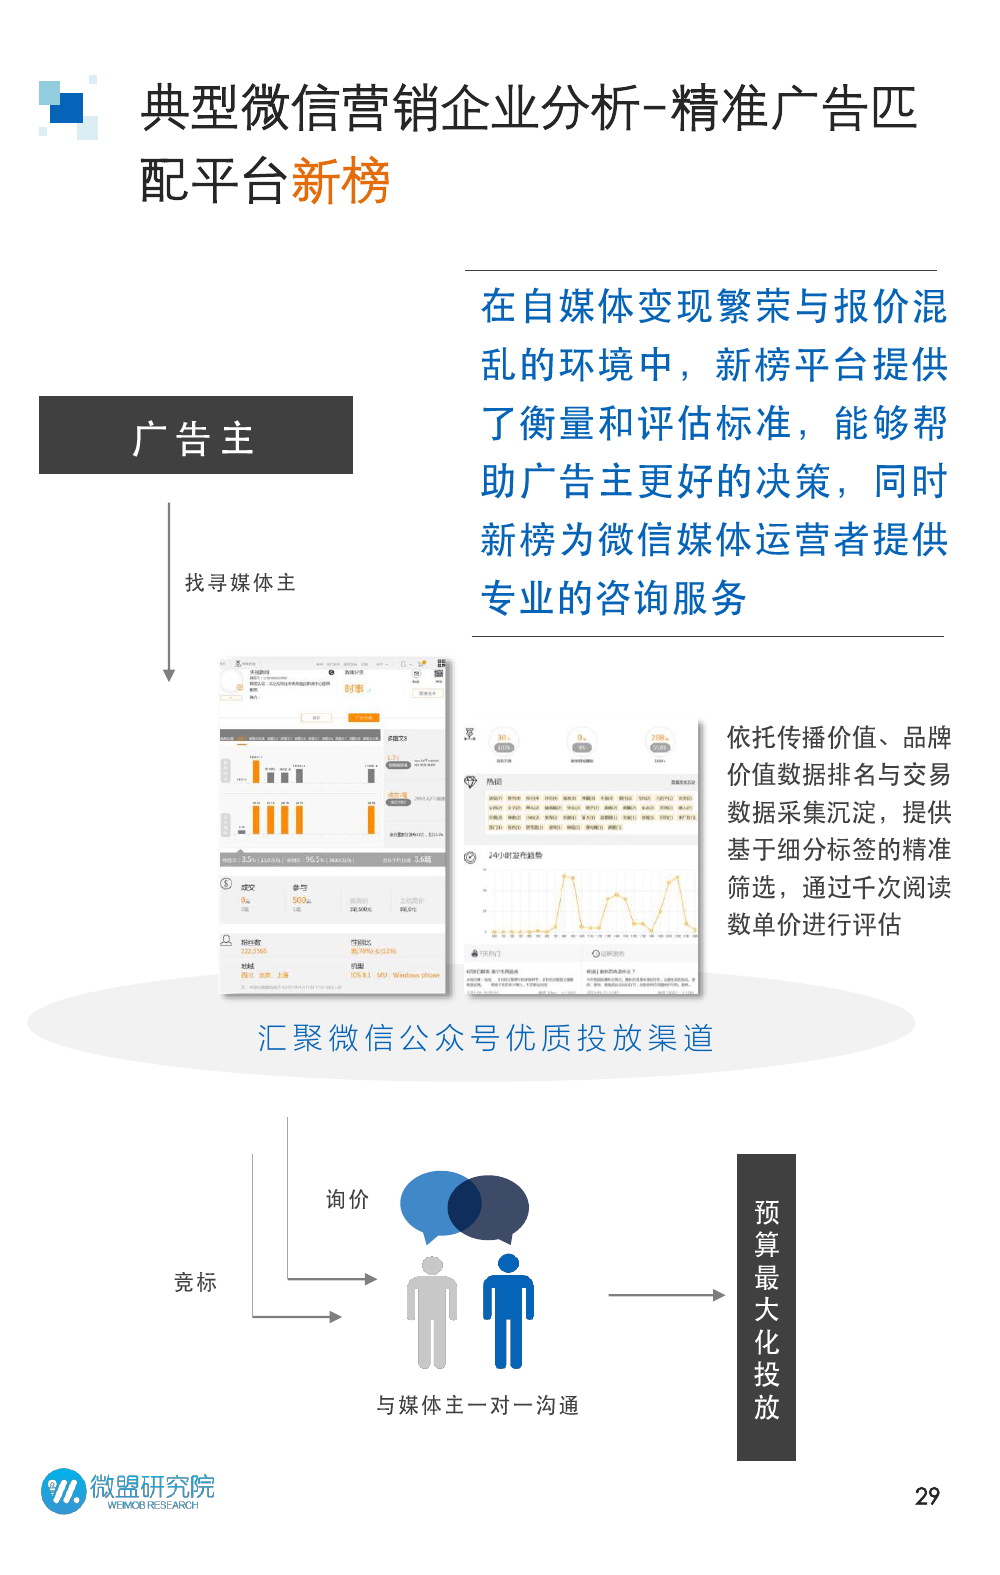 2015年微信营销研究报告_000029